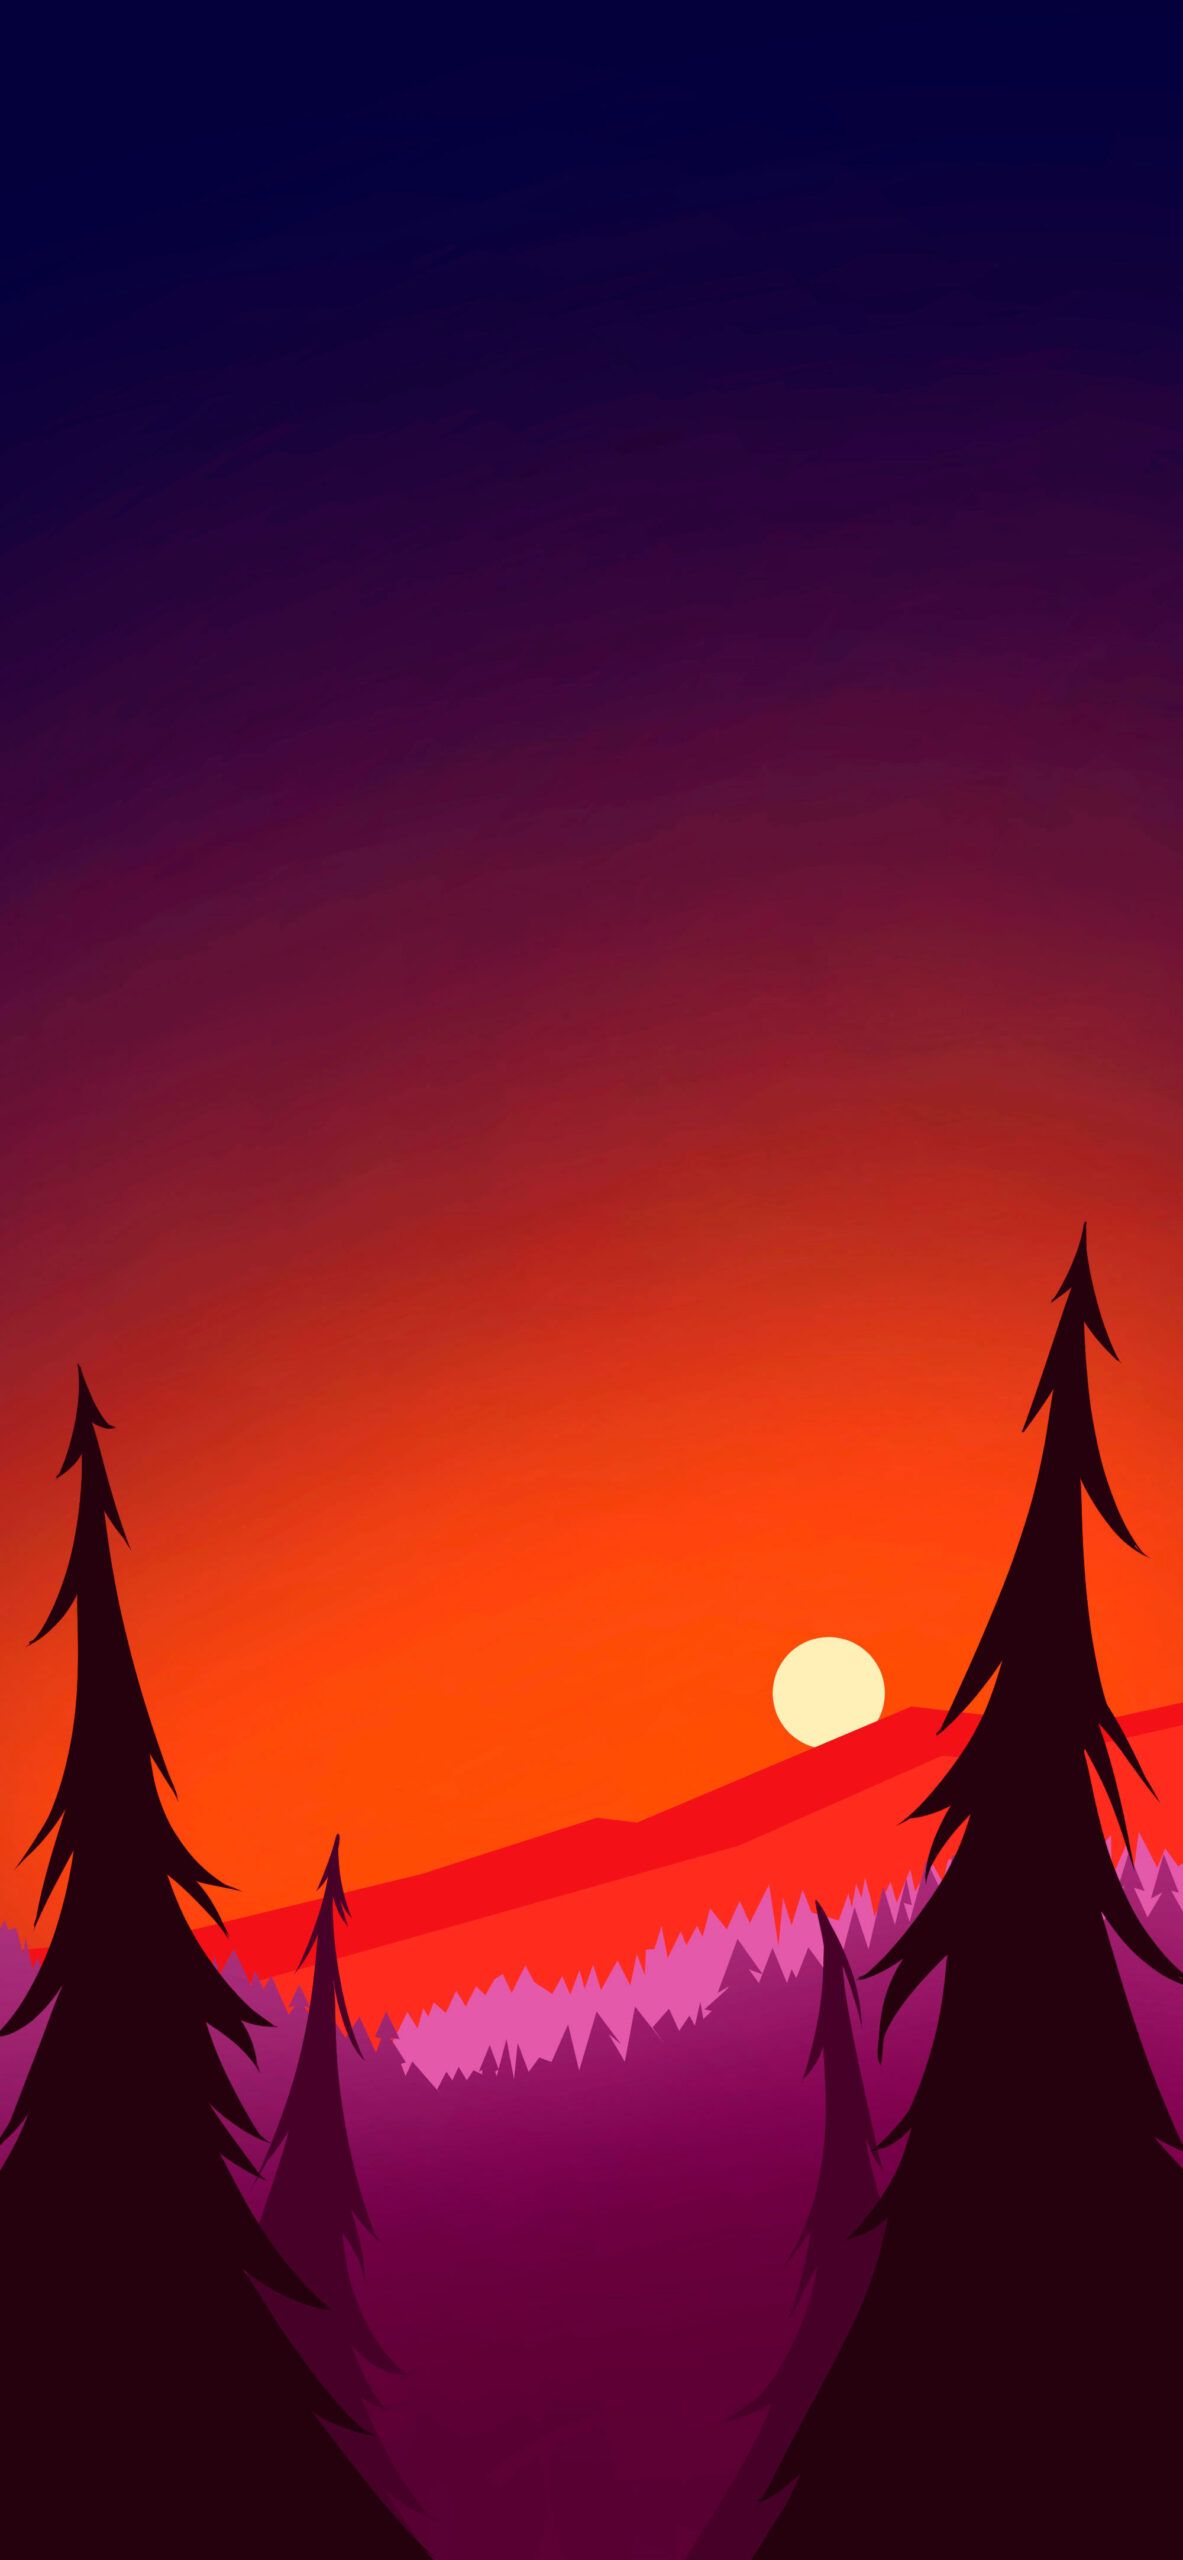 Gravity Falls Sunset Aesthetic Wallpaper